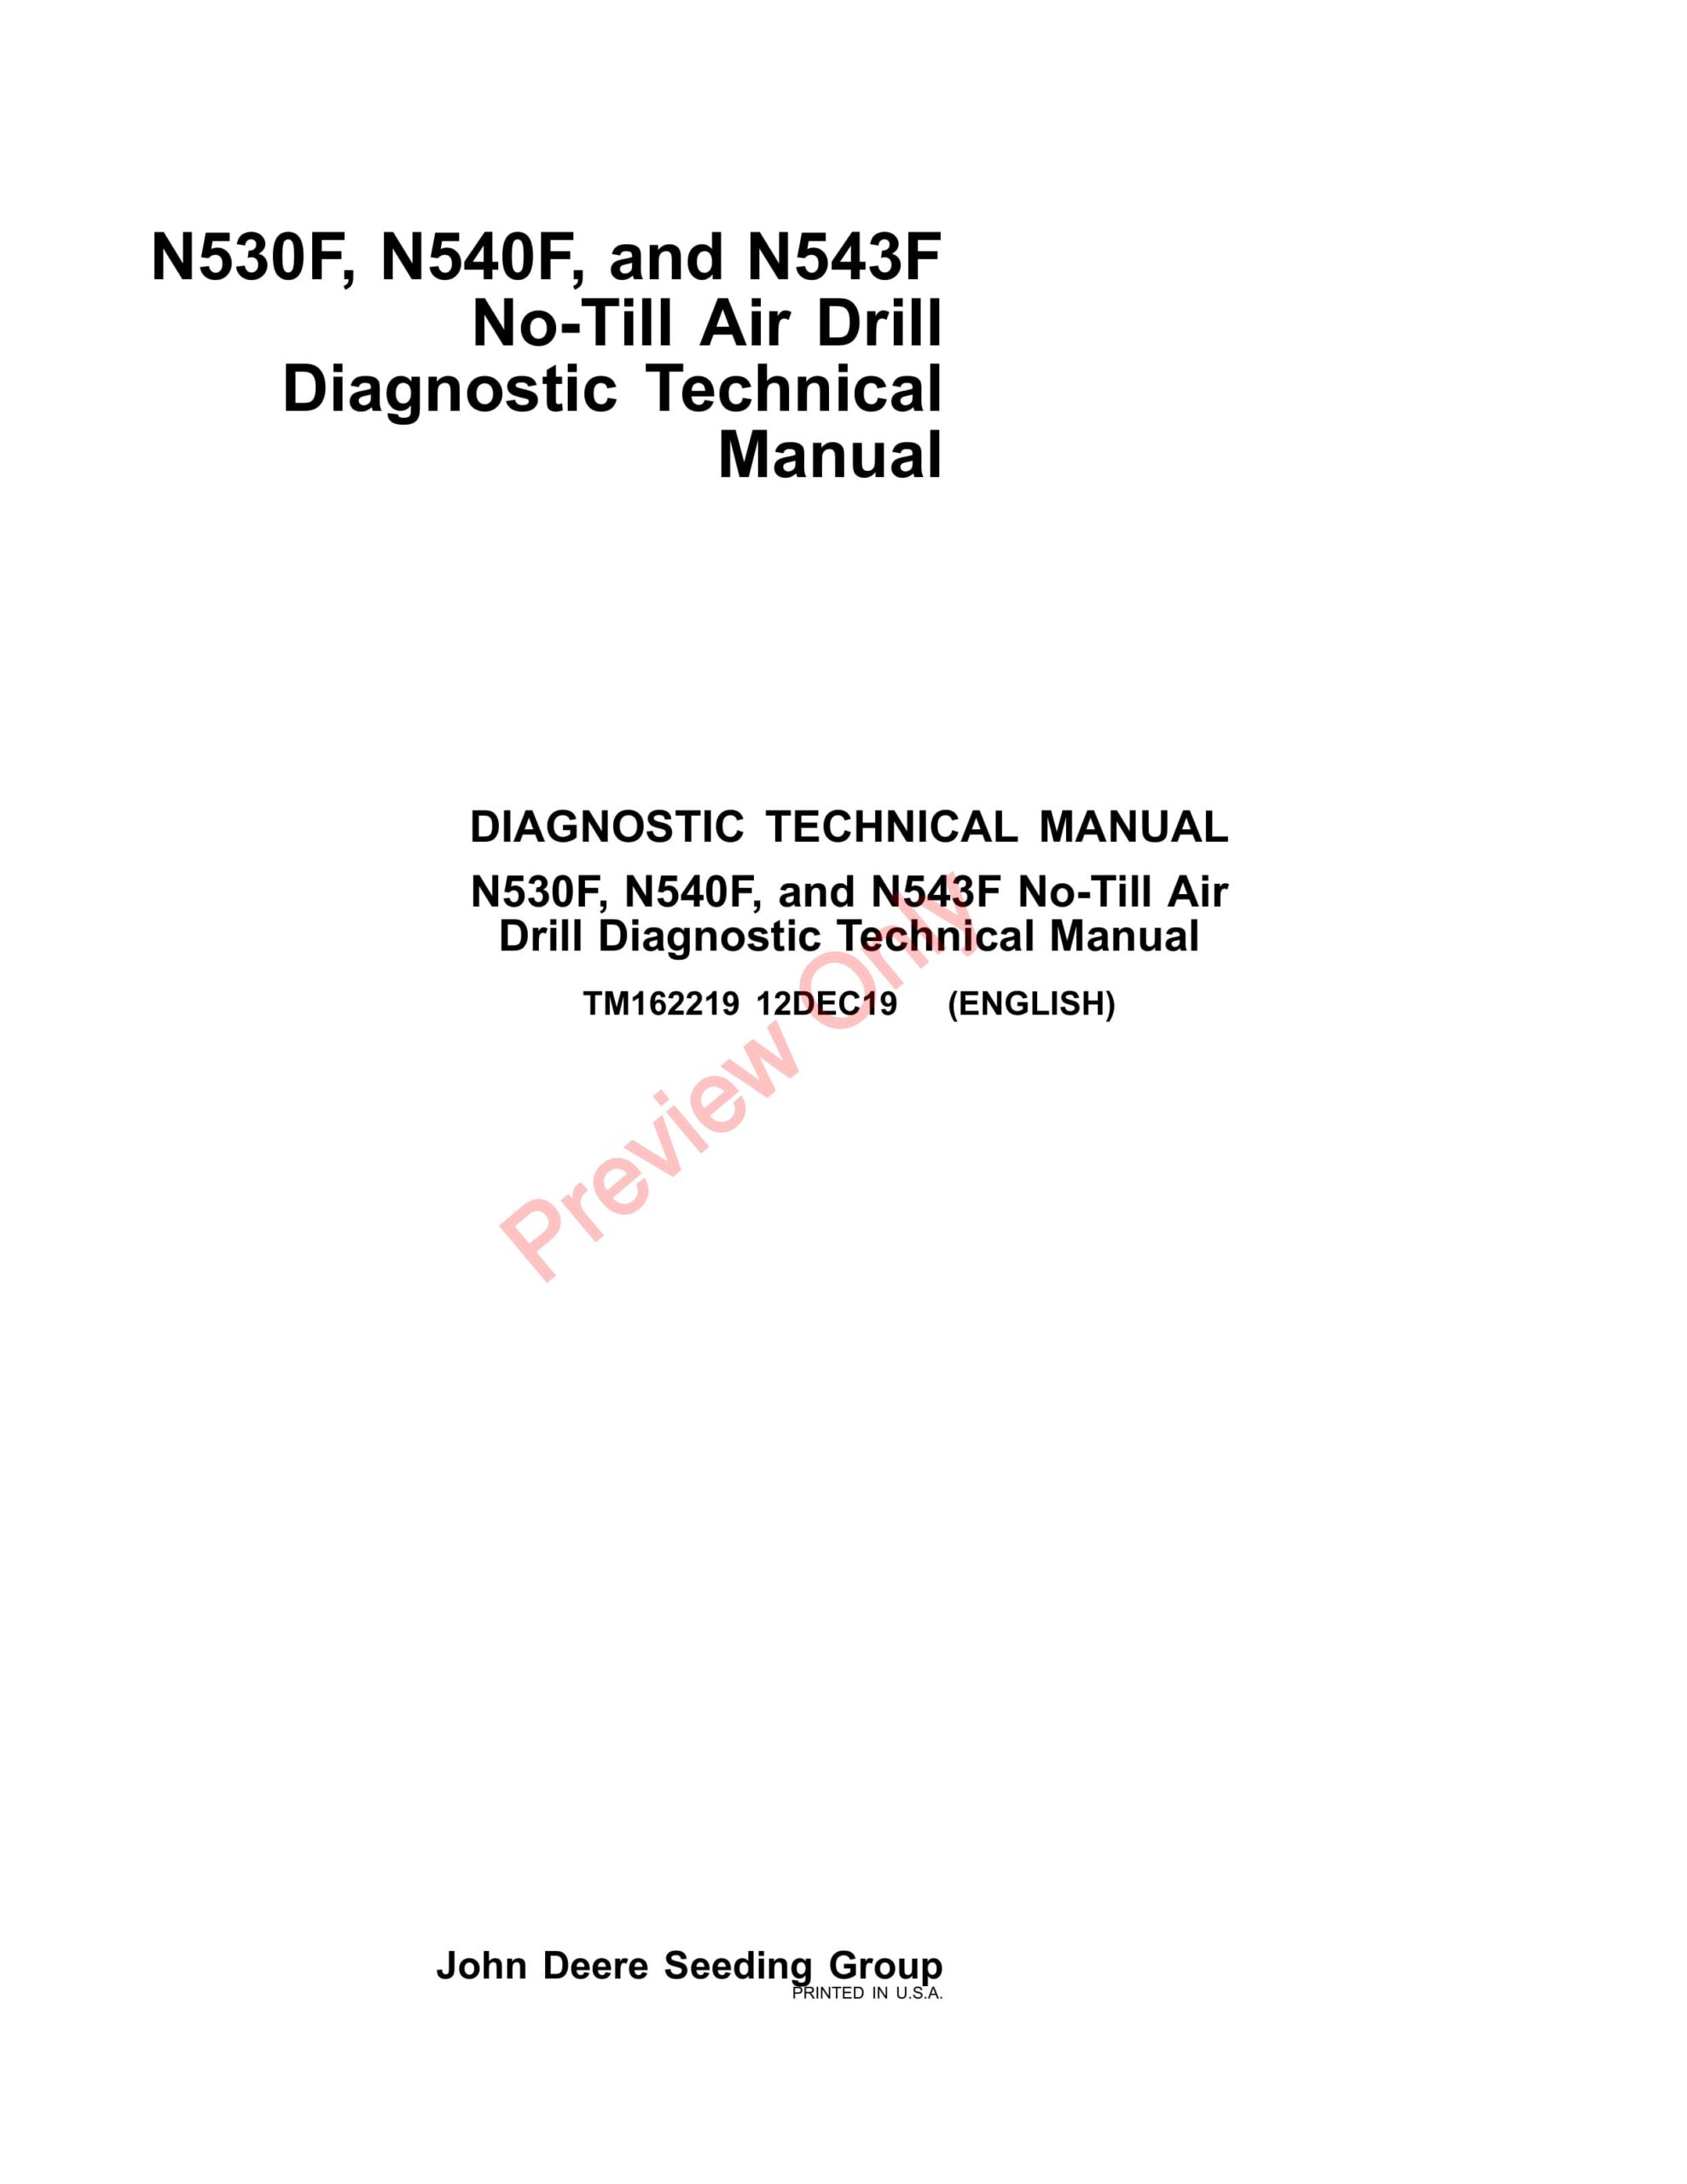 John Deere N530F, N540F, and N543F No-Till Air Drill Diagnostic Technical Manual TM162219 12DEC19-1